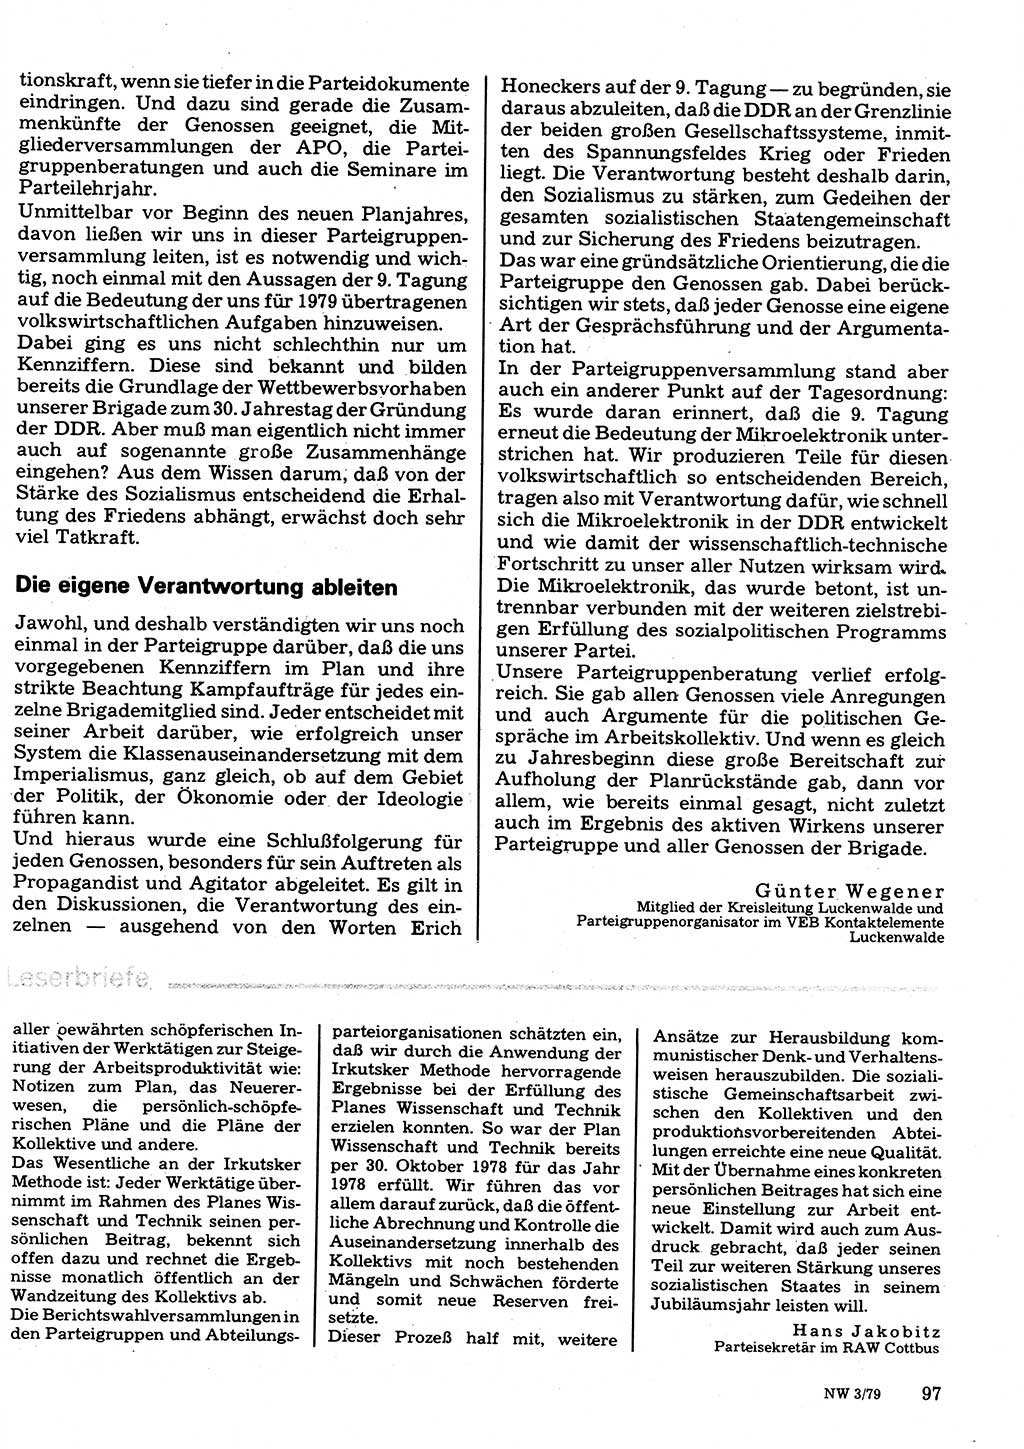 Neuer Weg (NW), Organ des Zentralkomitees (ZK) der SED (Sozialistische Einheitspartei Deutschlands) für Fragen des Parteilebens, 34. Jahrgang [Deutsche Demokratische Republik (DDR)] 1979, Seite 97 (NW ZK SED DDR 1979, S. 97)